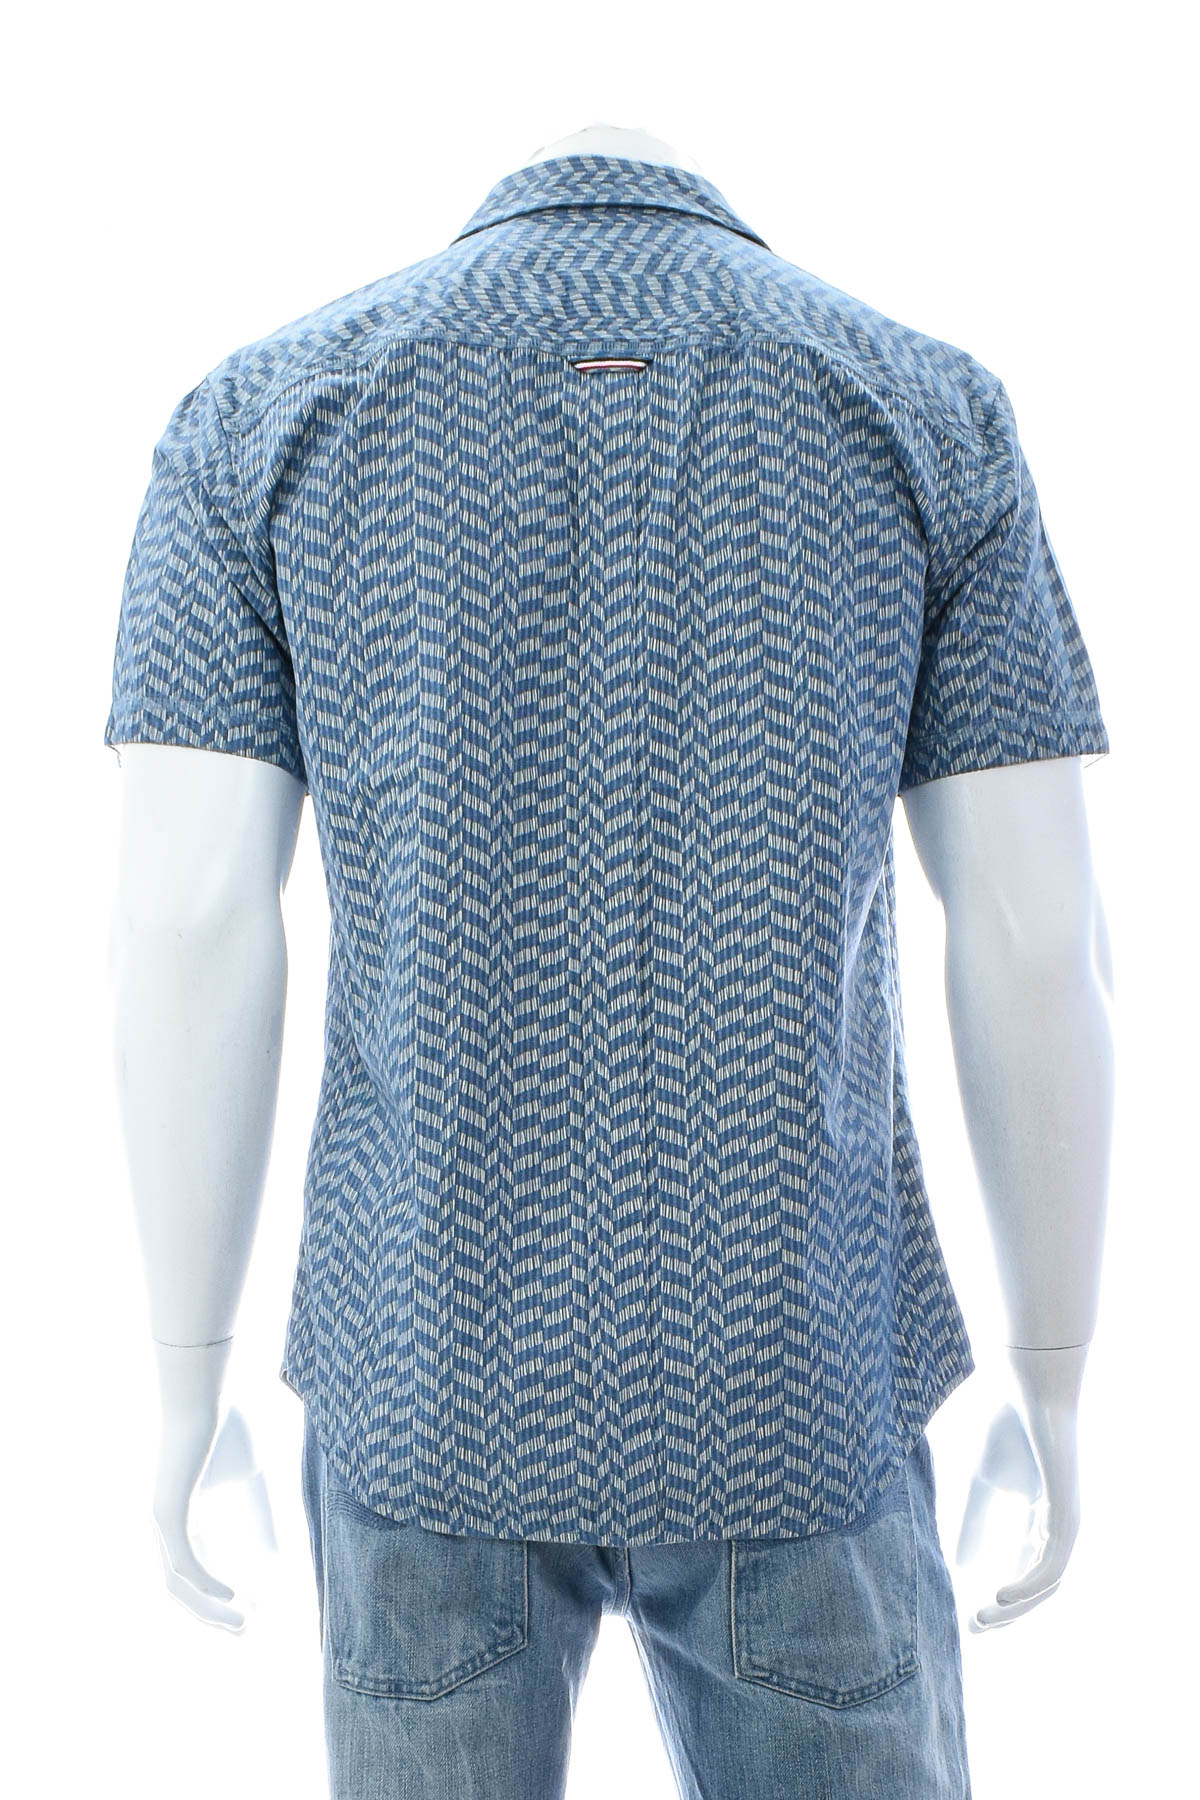 Ανδρικό πουκάμισο - HILFIGER DENIM - 1